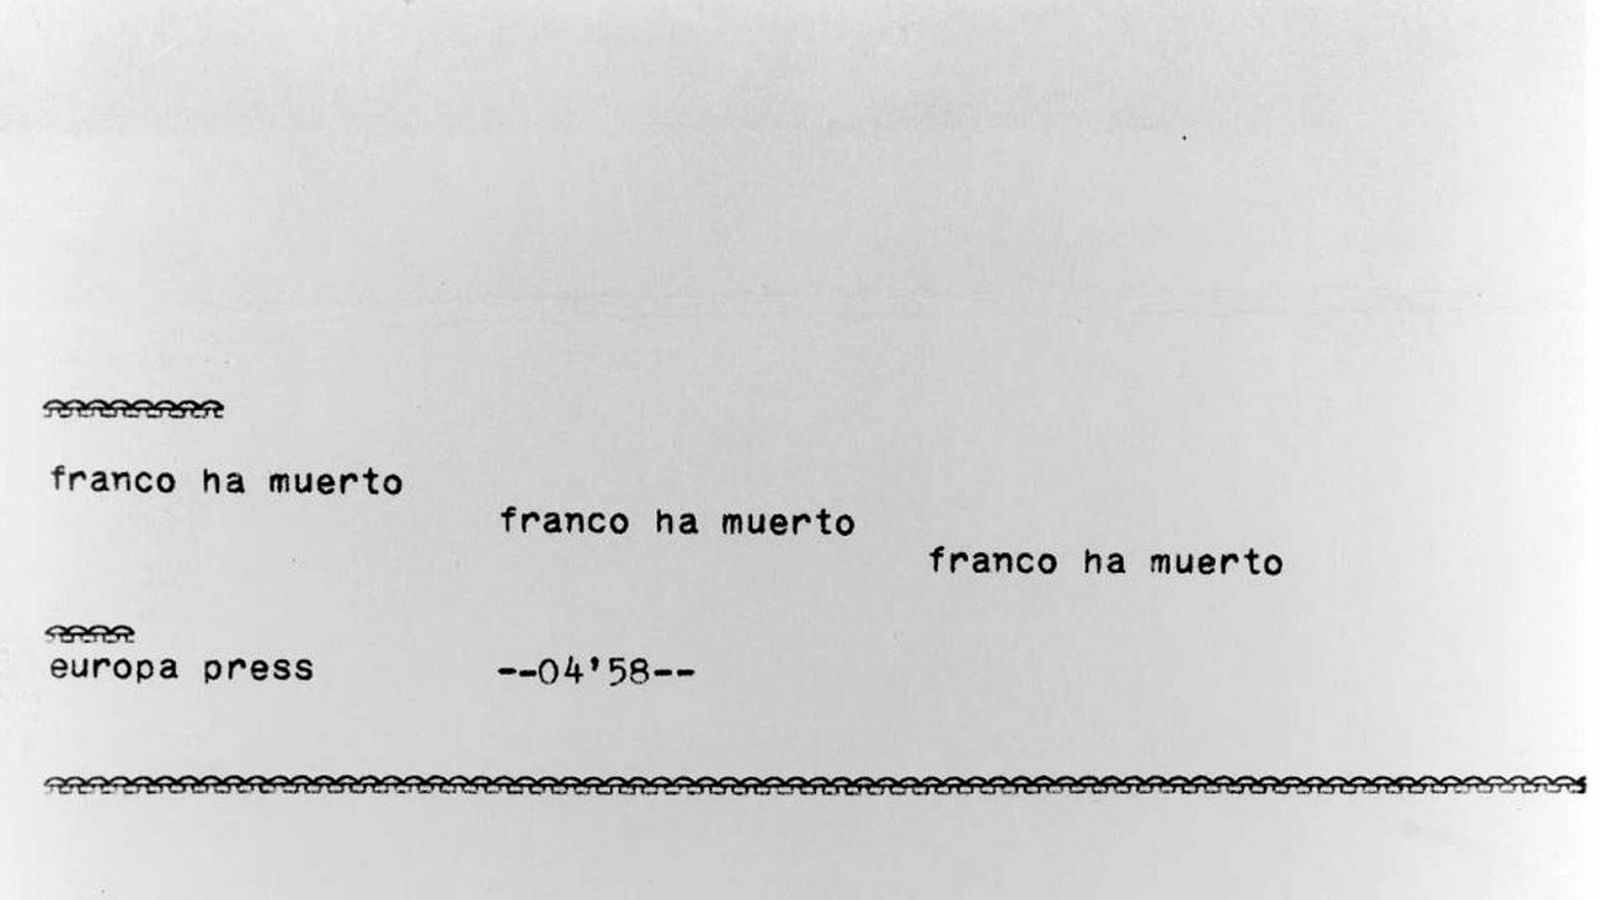 Franco: El primer teletipo que informó sobre la muerte de Franco - RTVE.es